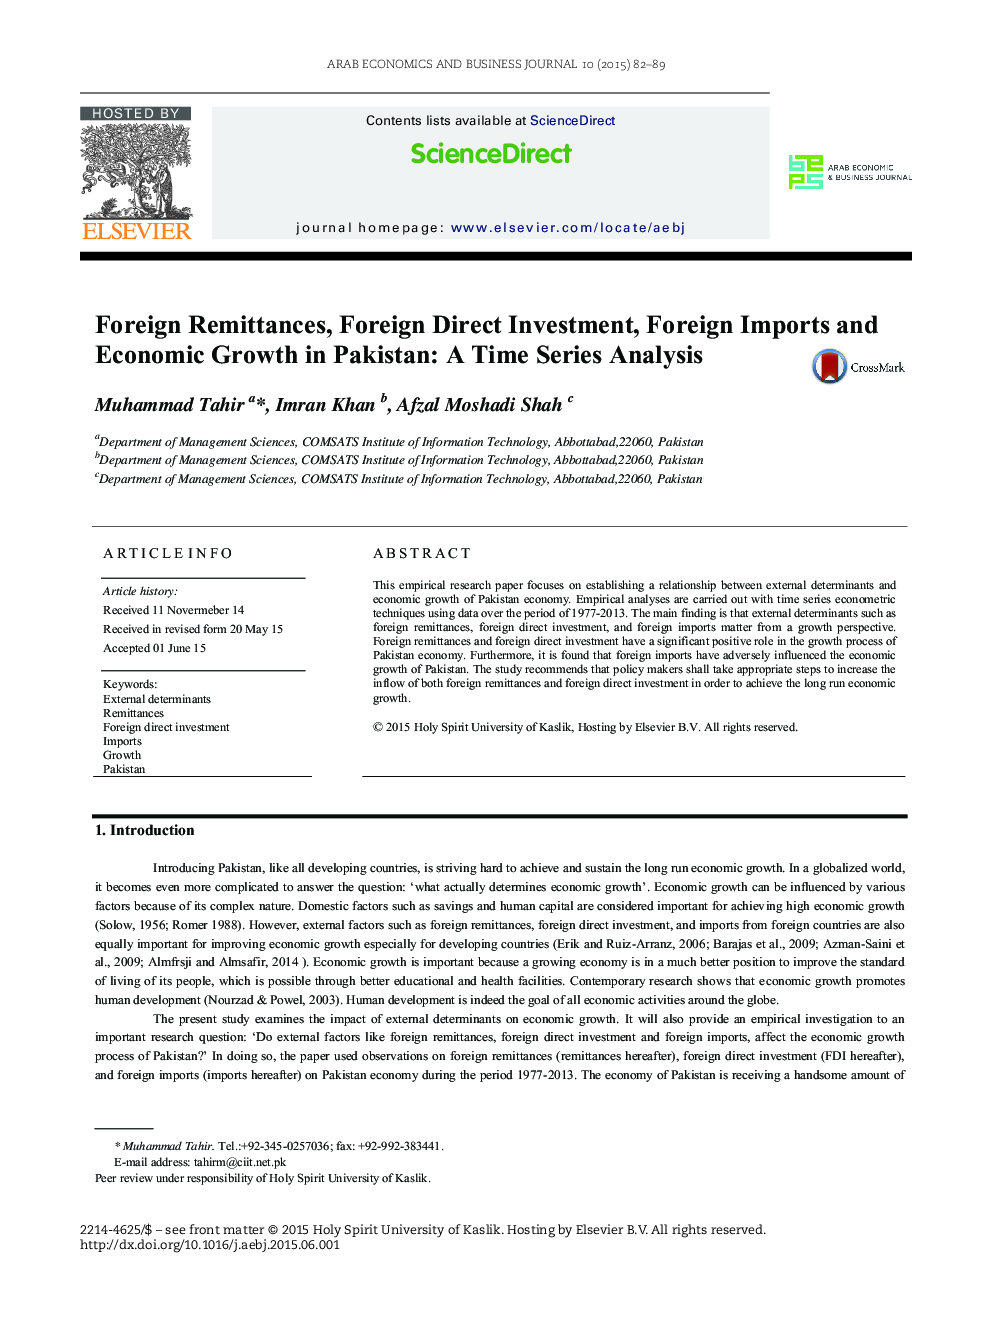 مبالغ خارجی، سرمایه گذاری مستقیم خارجی، واردات خارجی و رشد اقتصادی در پاکستان: تحلیل سری زمانی؟ 